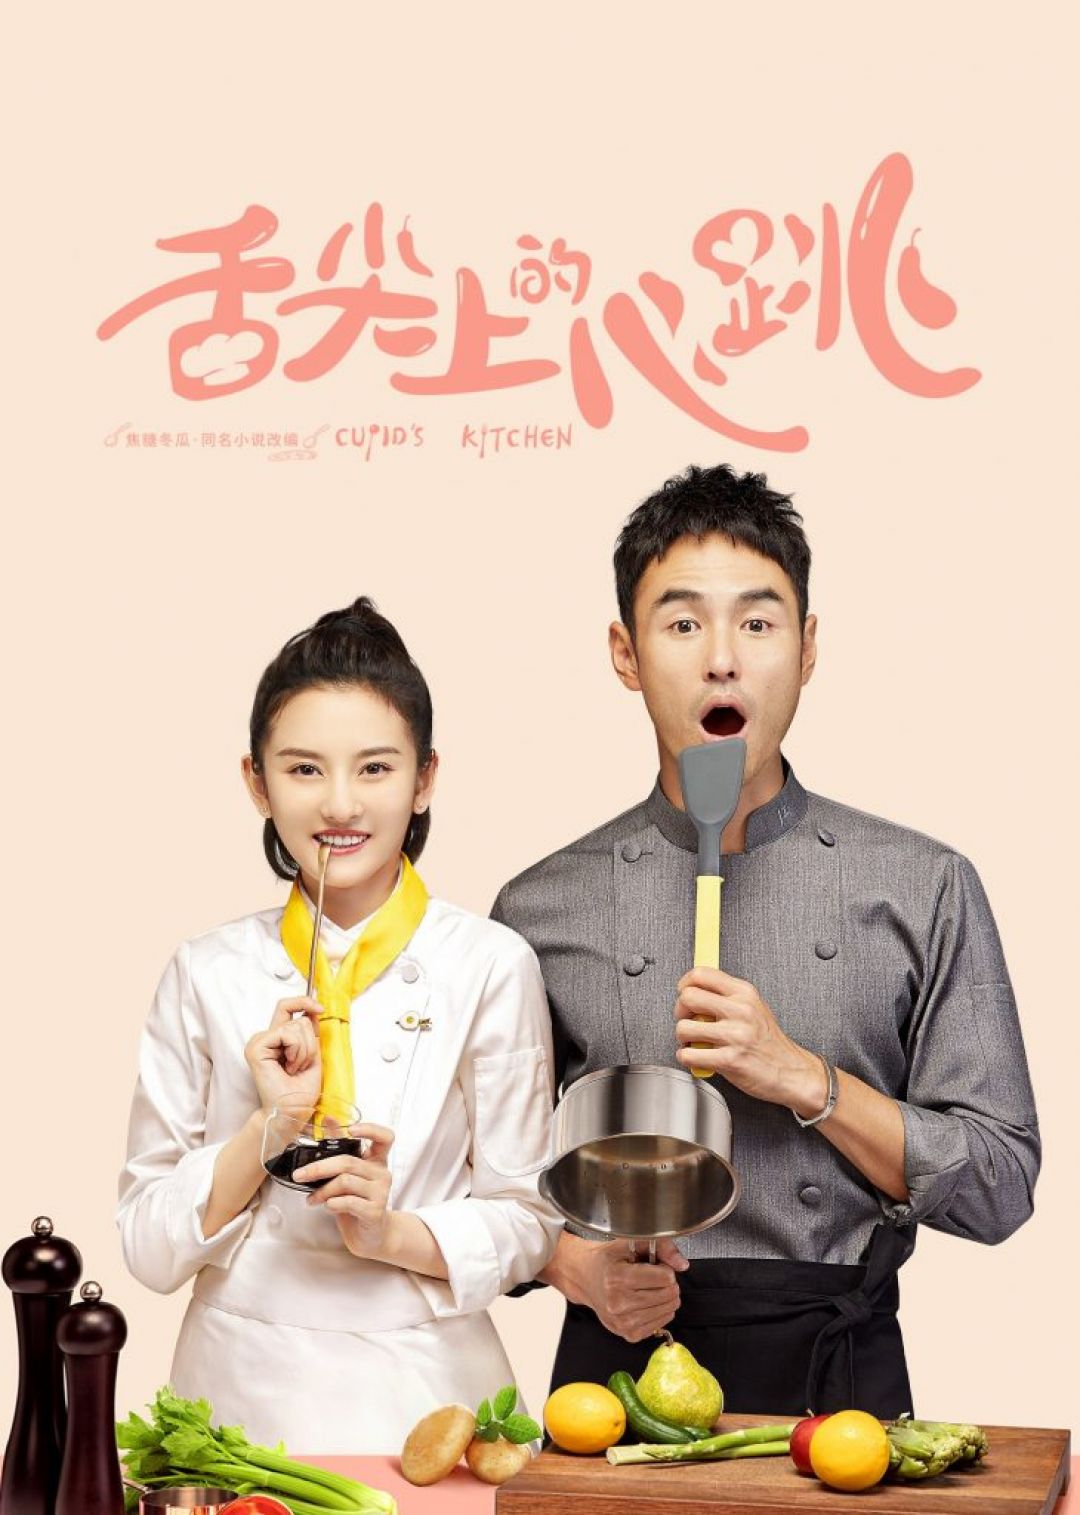 Drama China Cupid’s Kitchen, Kisah Chef Hebat yang Kehilangan Indra Perasaanya-Image-1